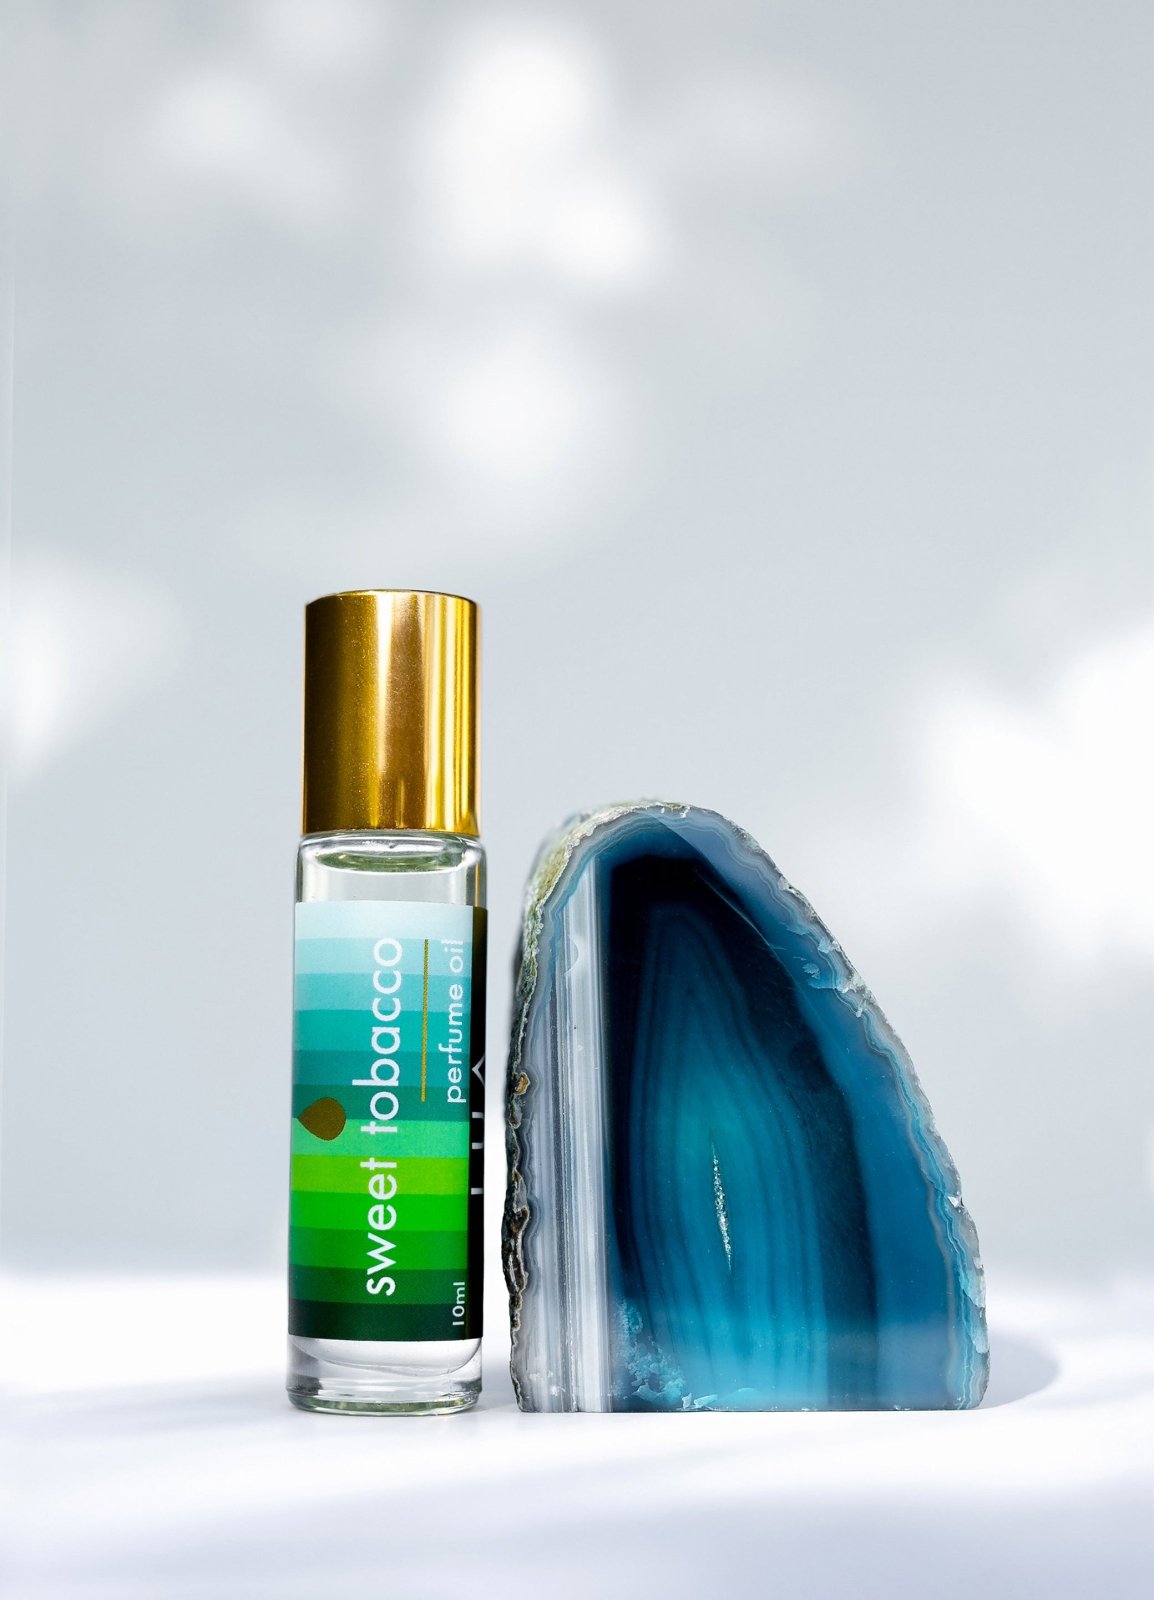 C Cologne Body Oils for Men Roll-on Long Lasting perfume oil See Full  Descrp